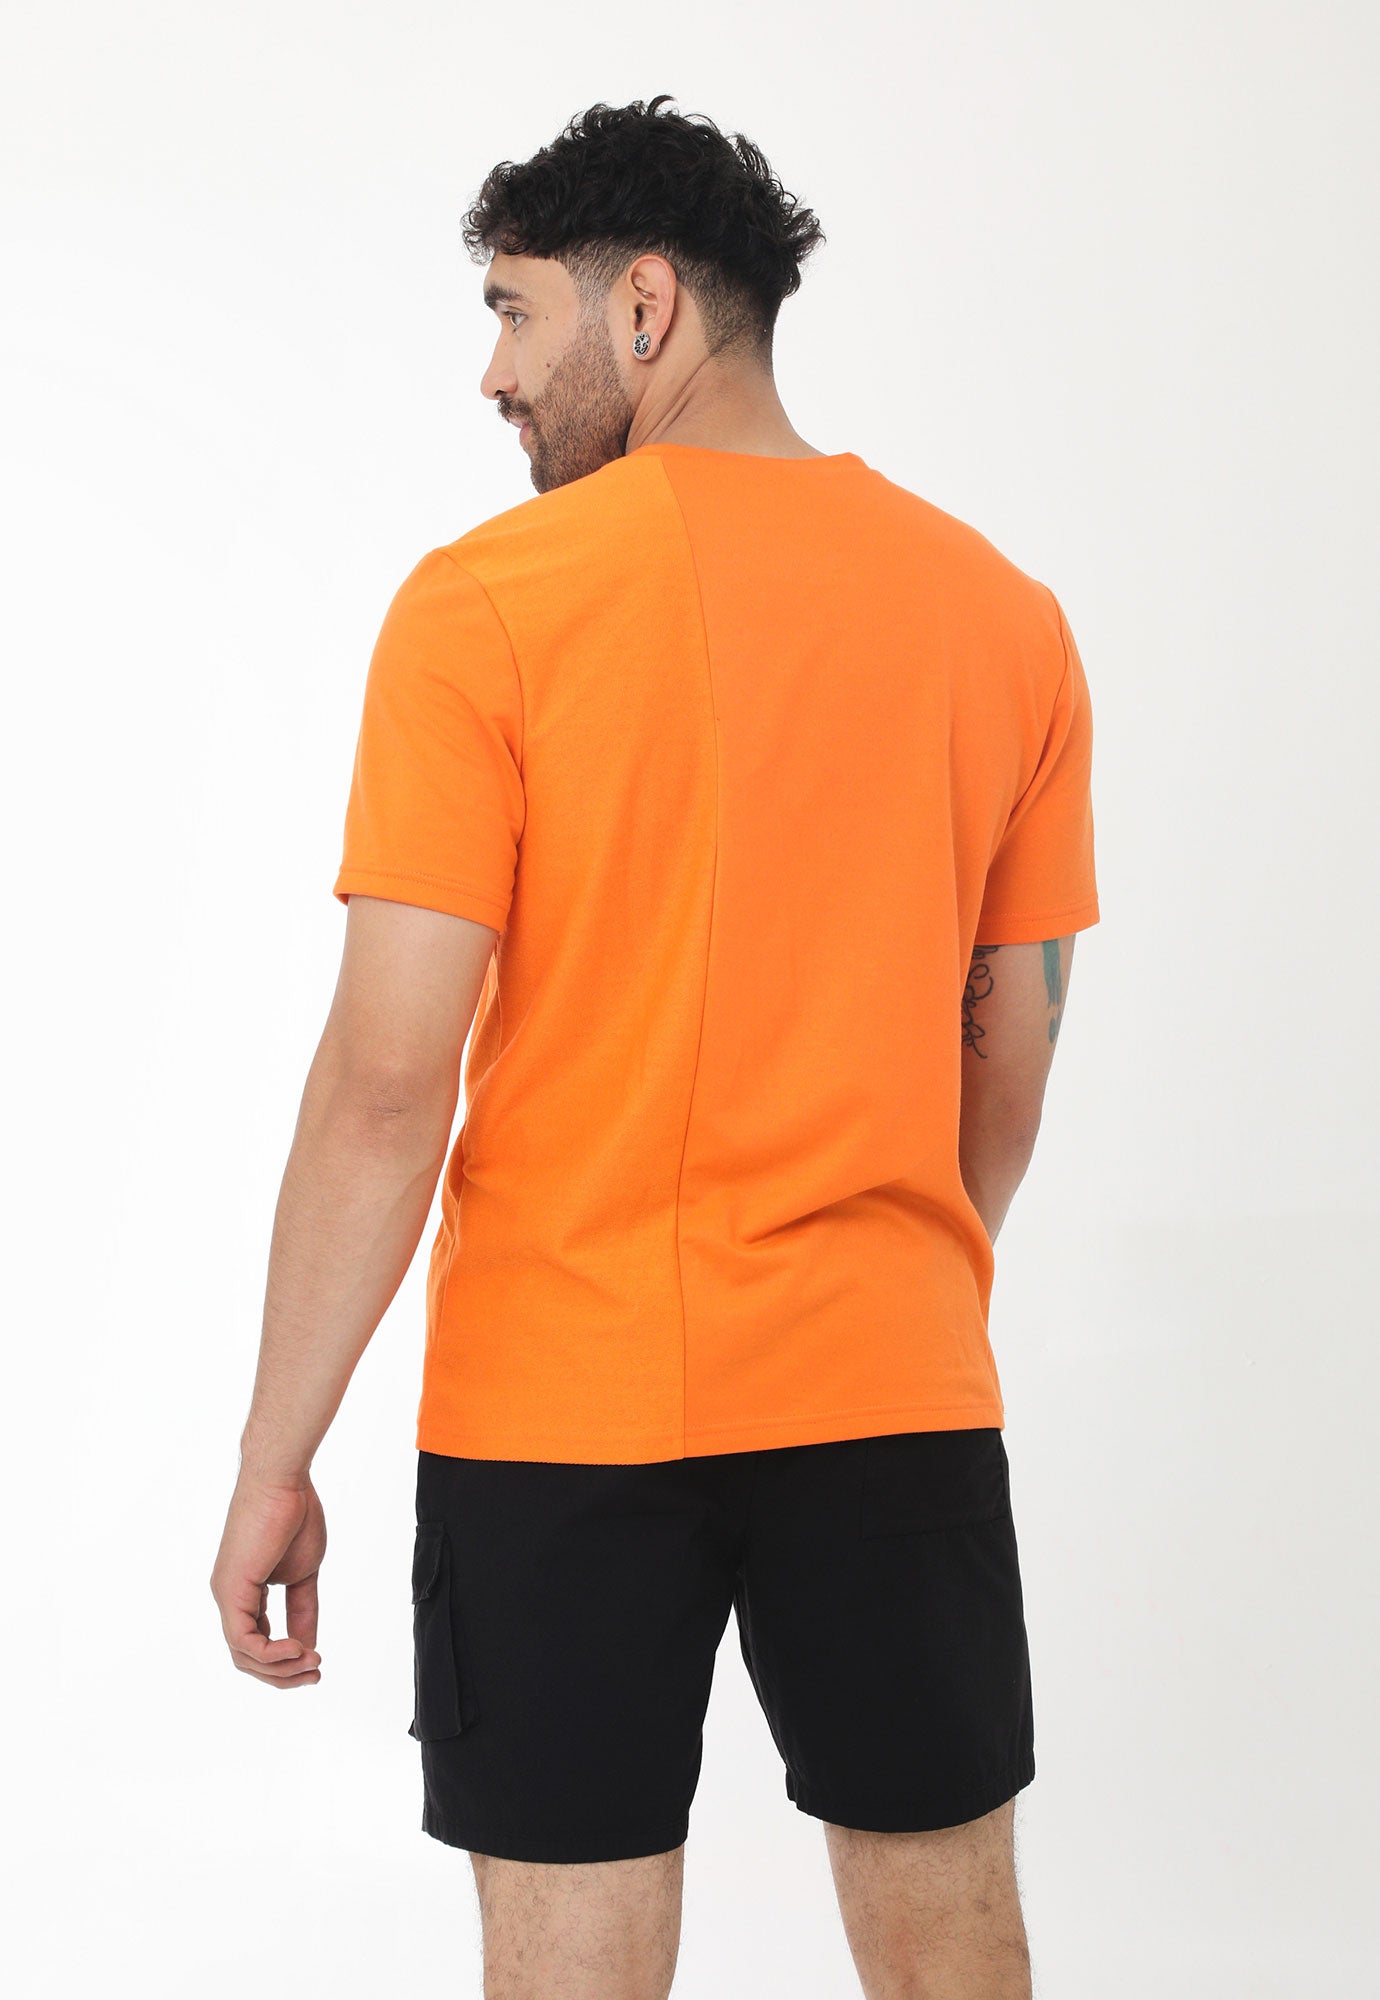 Camiseta naranja manga corta, bloque vertical en revés de tela, estampado en frente y cuello redondo para hombre